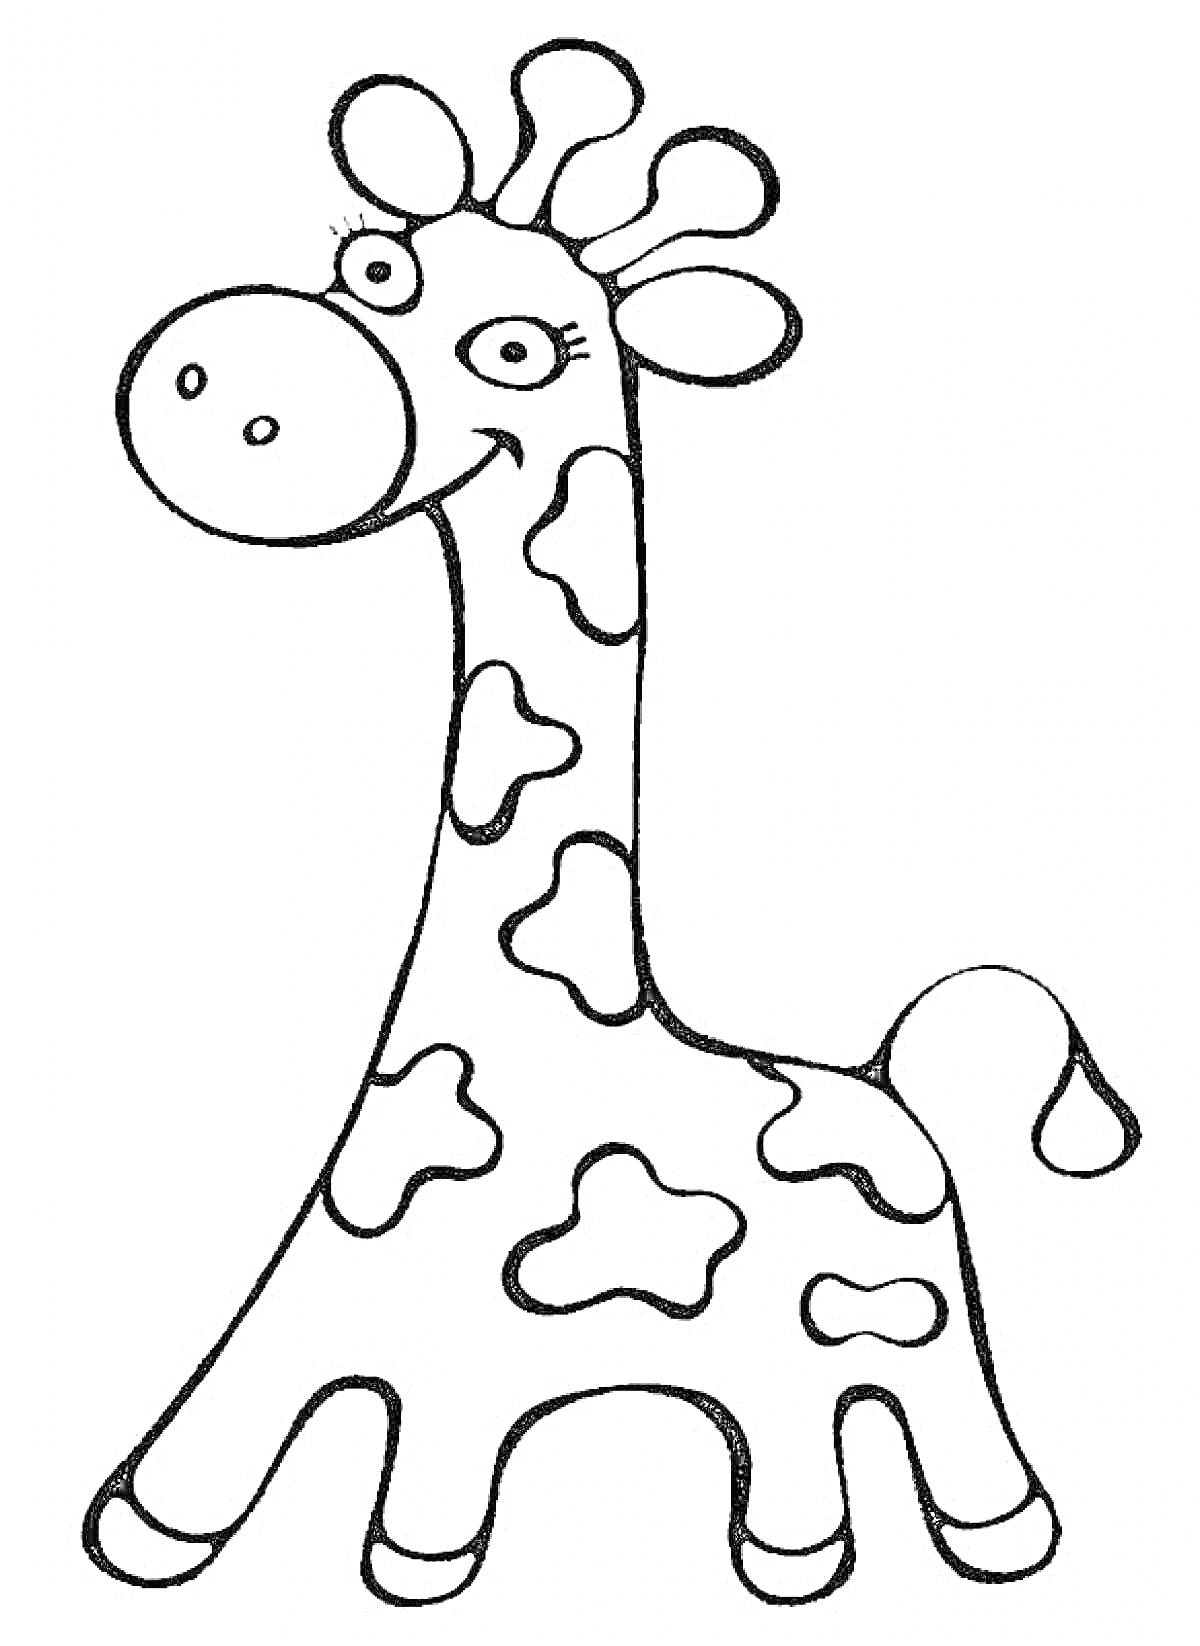 Жираф с пятнами, улыбающееся лицо, уши и рога